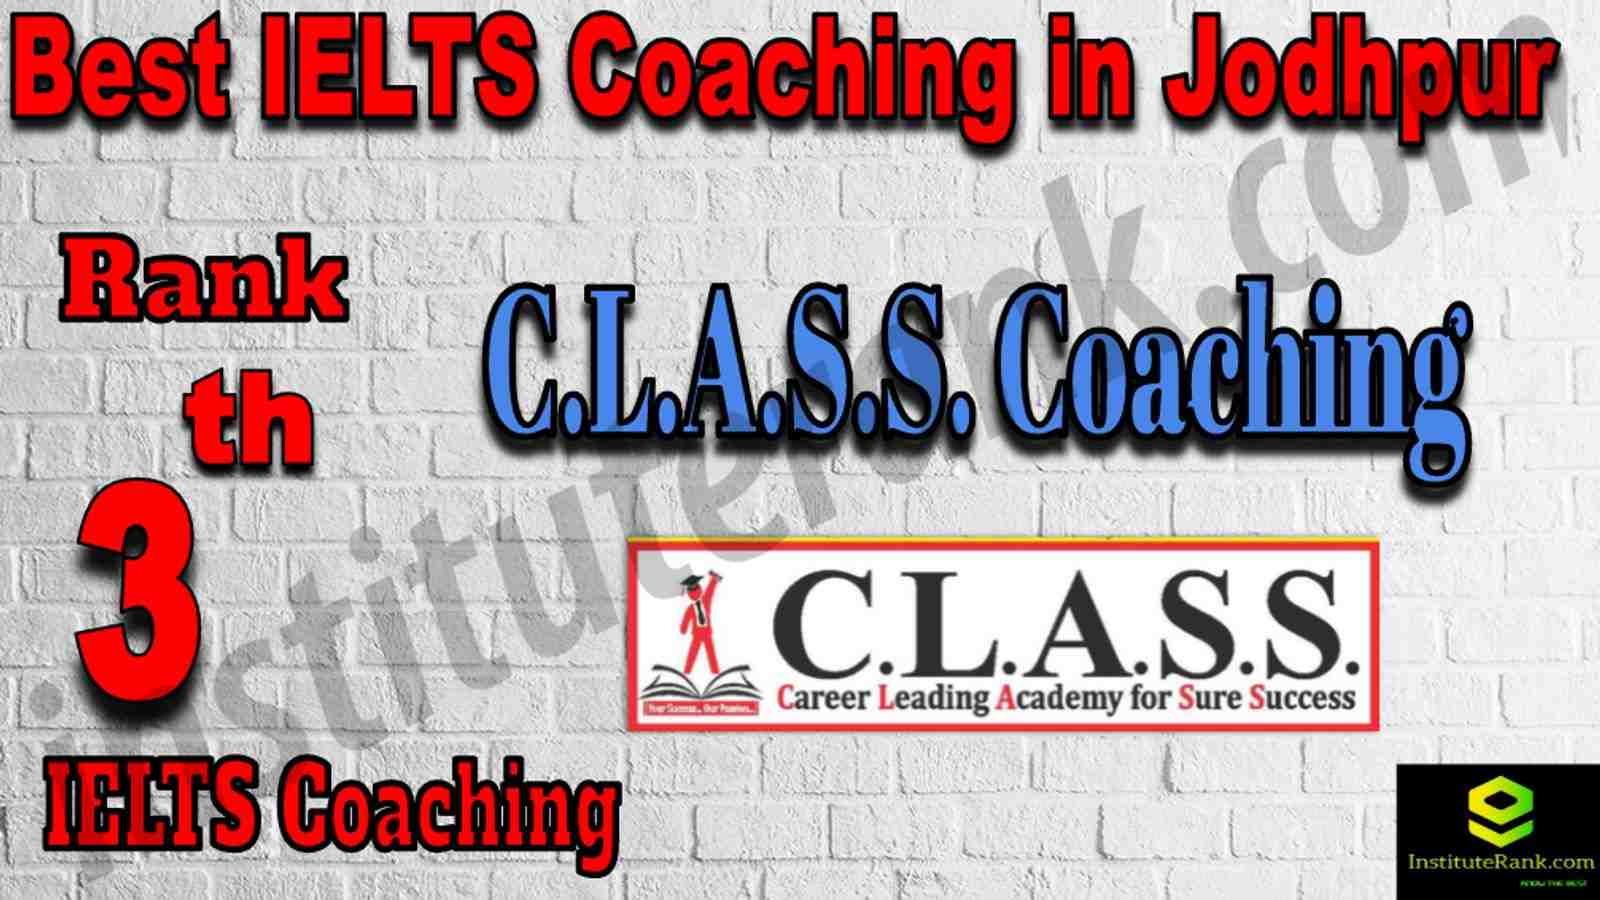 3rd Best IELTS Coaching in Jodhpur